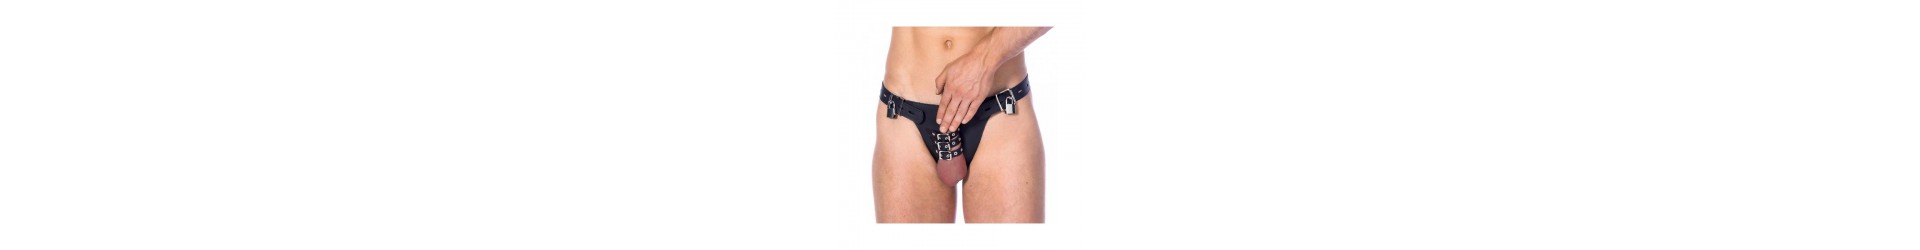 BDSM/Cinturones de Castidad